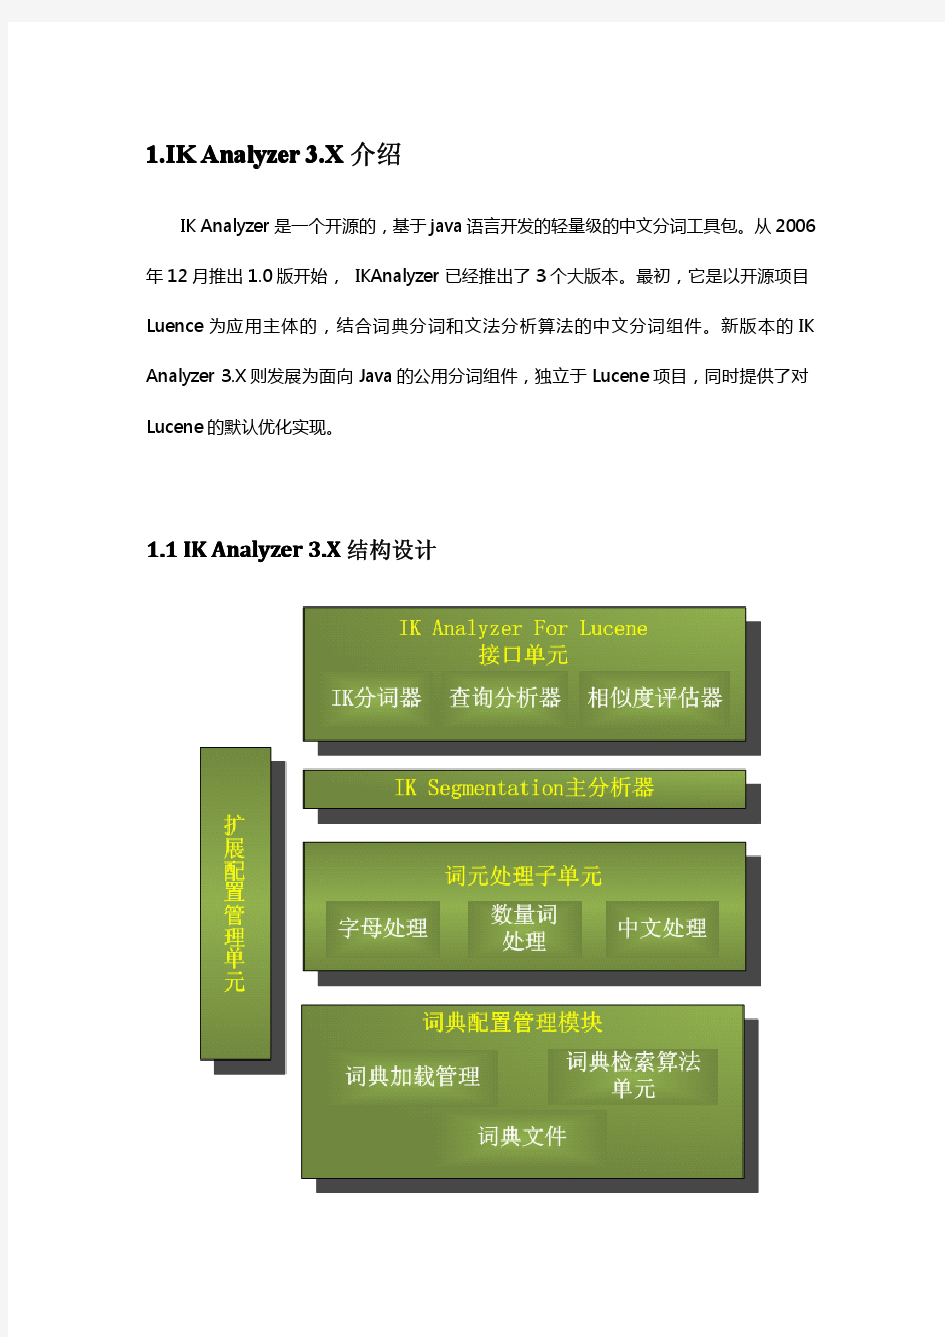 IKAnalyzer中文分词器V3.2.0使用手册